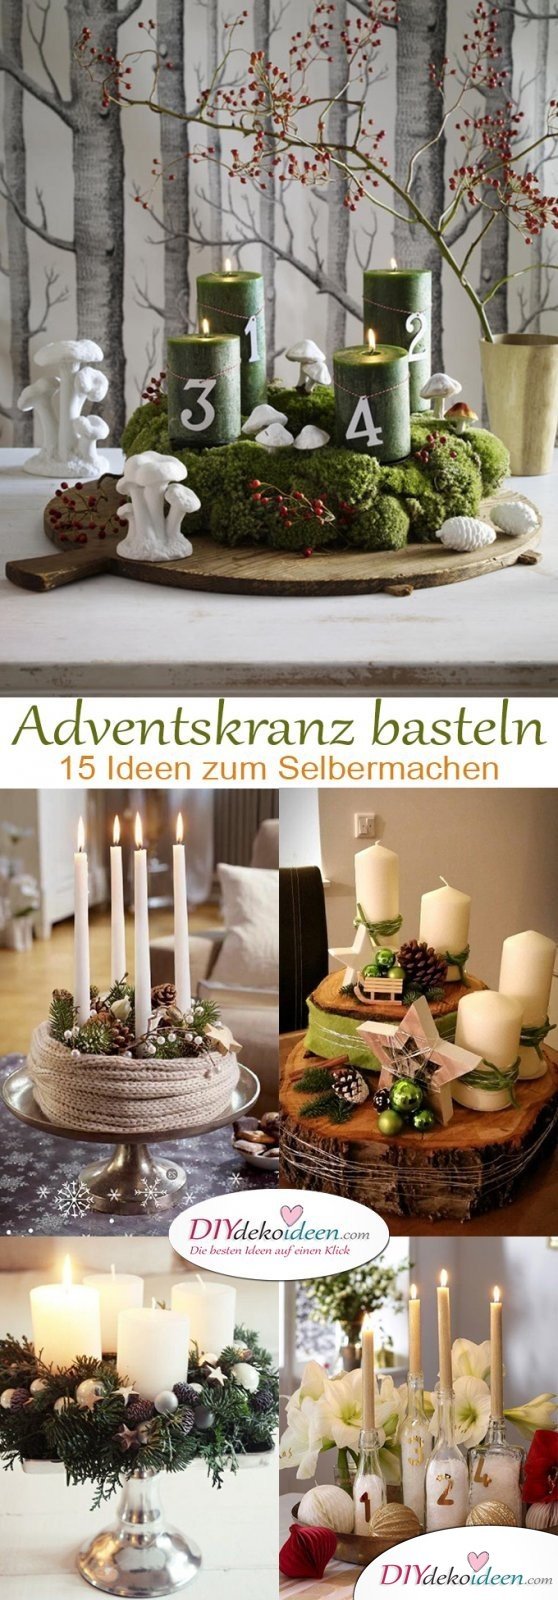 Bezaubernde DIY Bastelideen - Adventskranz basteln in der Vorweihnachtszeit